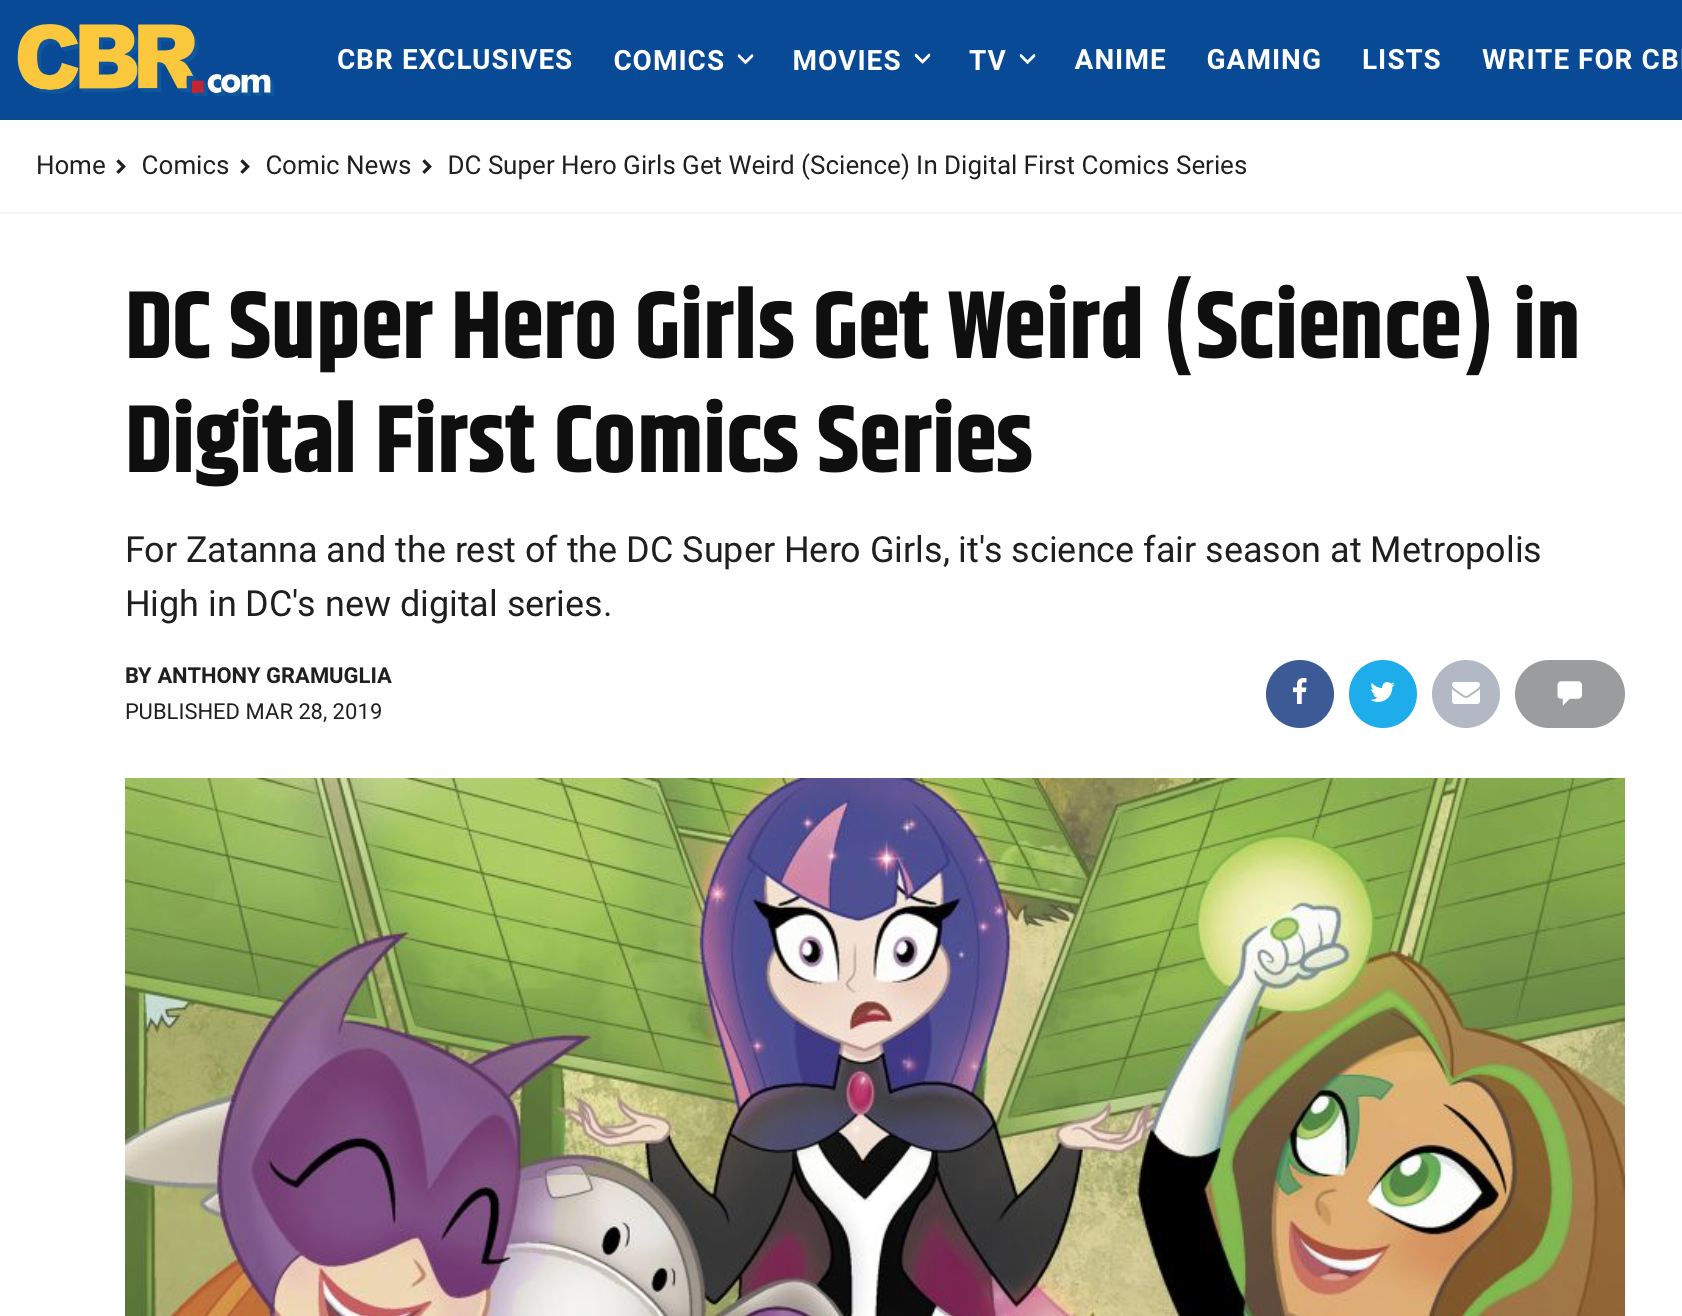 CBR: DC Super Hero Girls Get Weird (Science) in Digital First Comics Series